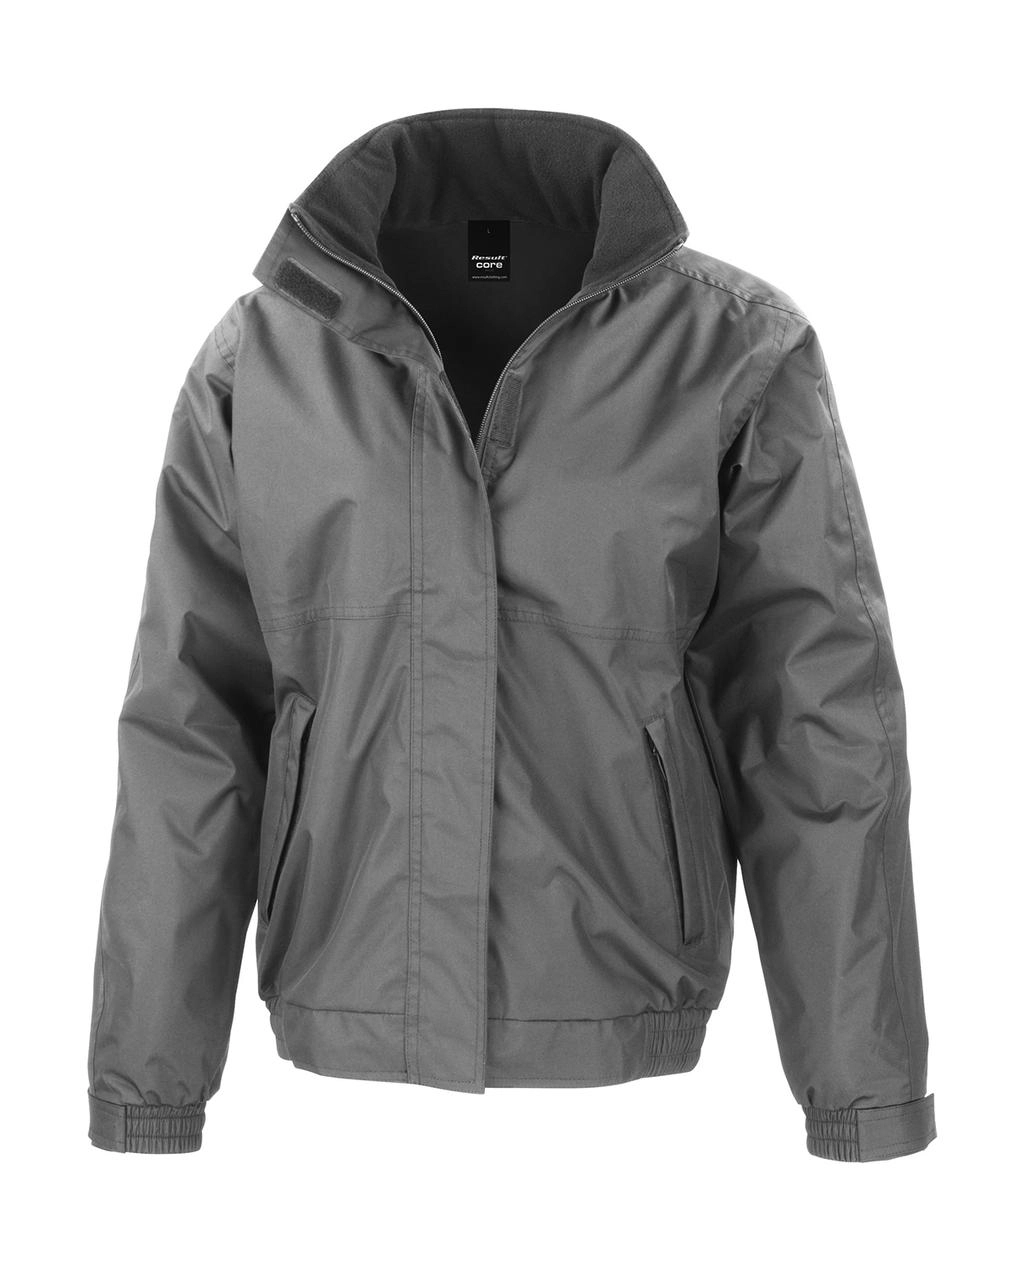 Channel Jacket zum Besticken und Bedrucken in der Farbe Grey mit Ihren Logo, Schriftzug oder Motiv.